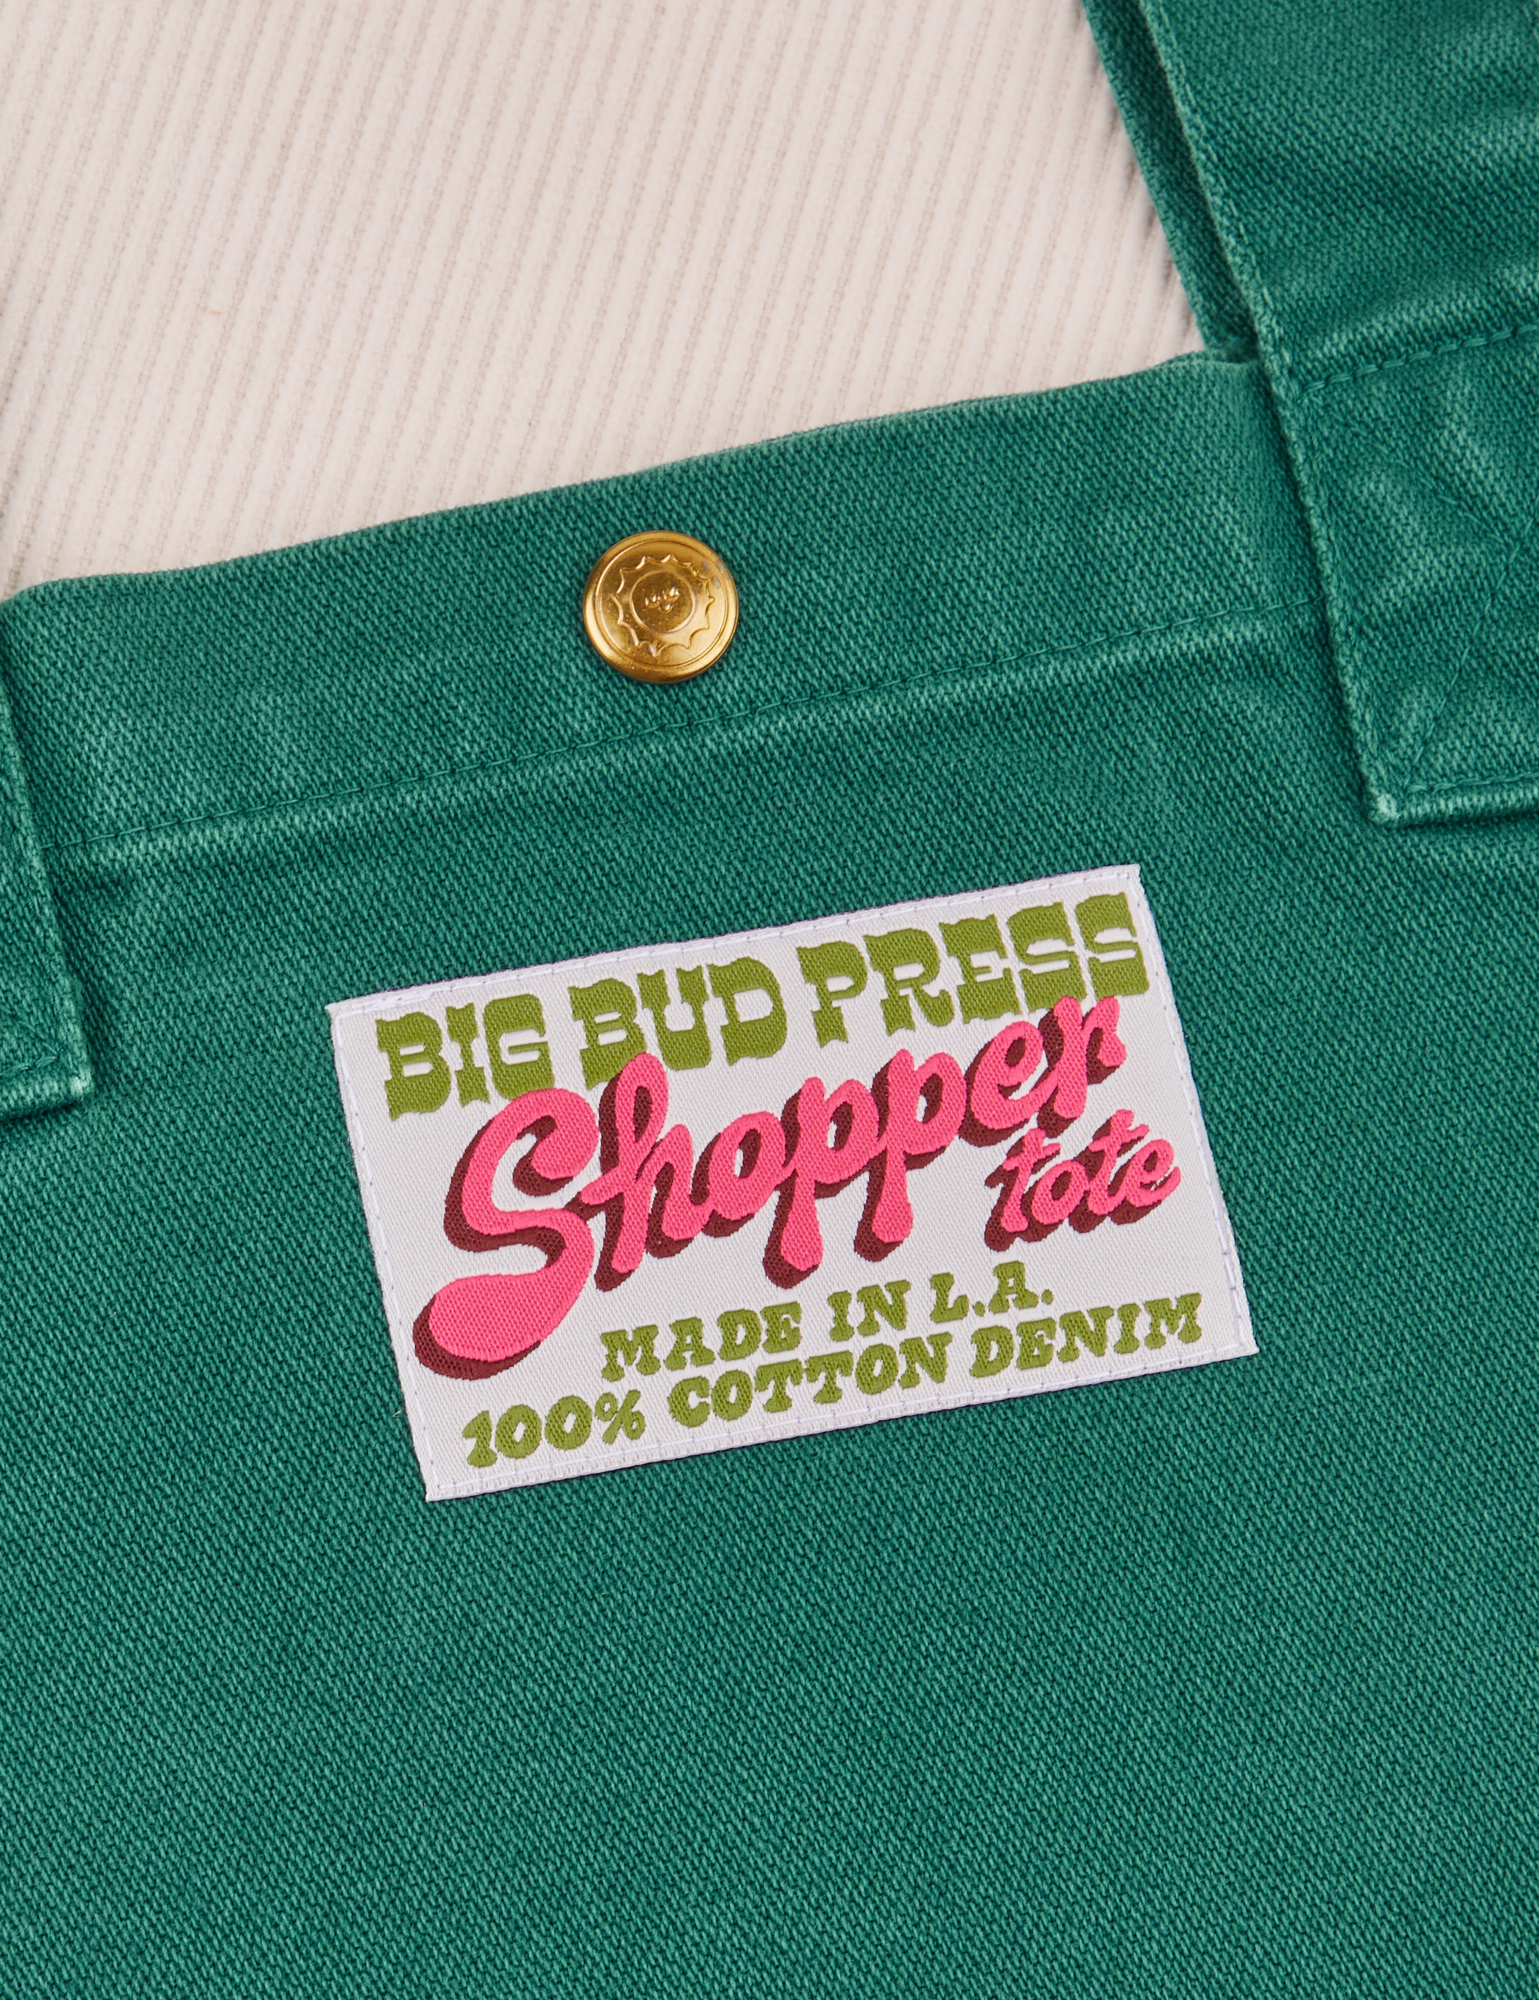 Shopper Tote Bag in Hunter Green label close up